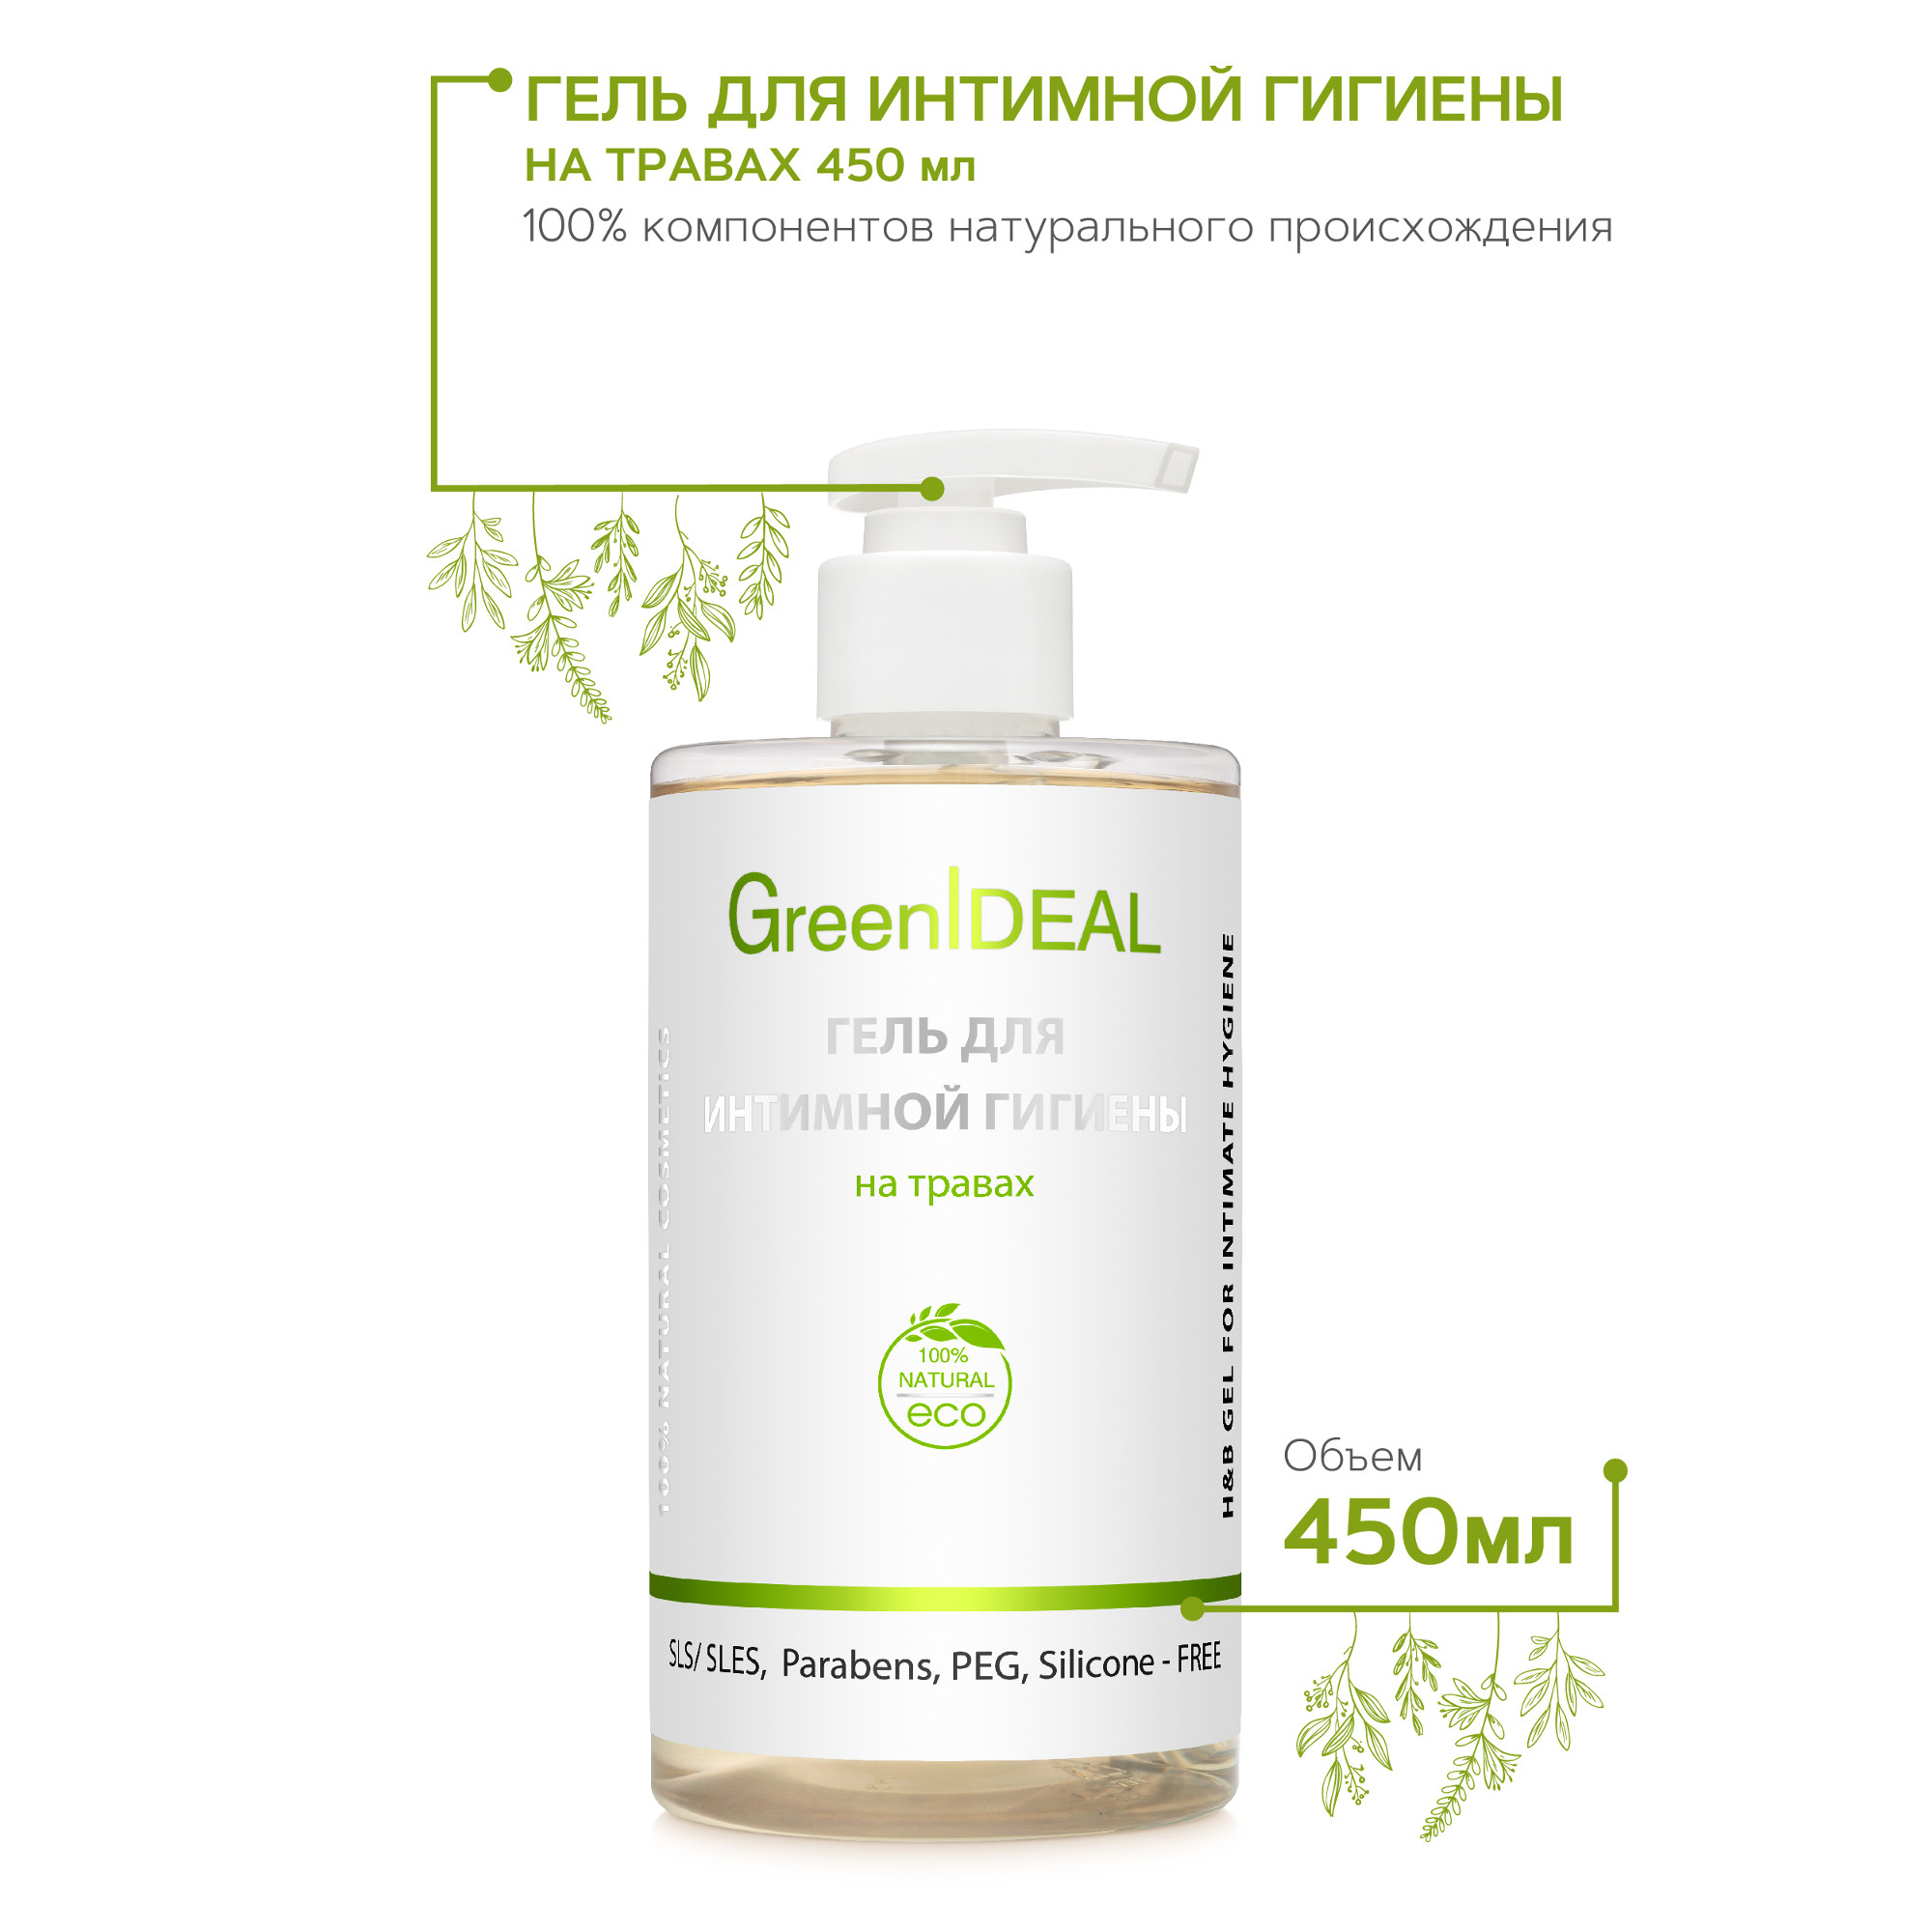 Гель для интимной гигиены GreenIDEAL Прозрачный на травах 450 мл - фото 2